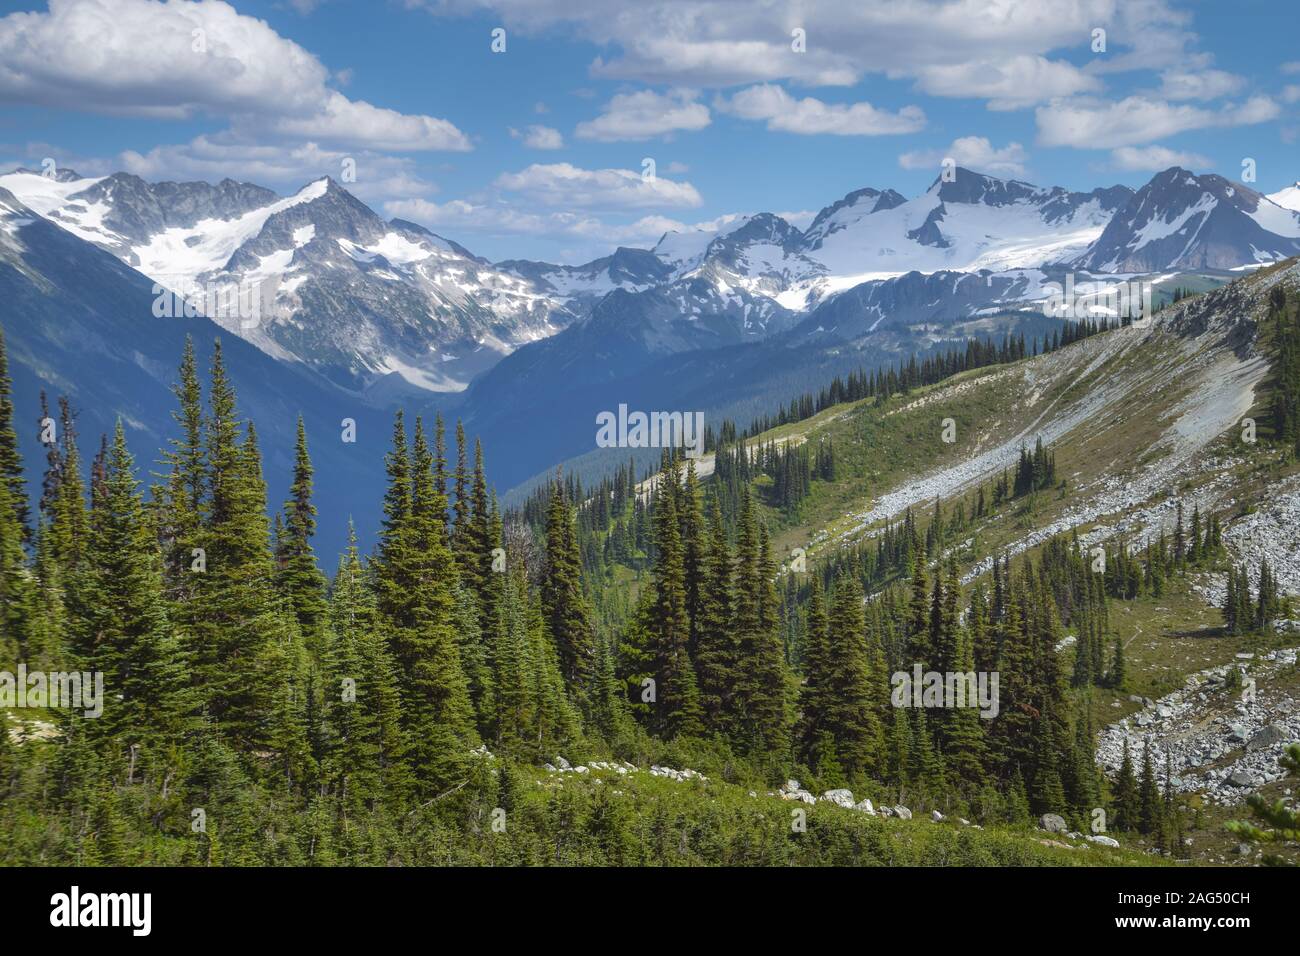 Paisaje alpino con pinos en colinas y montañas nevadas en segundo plano. Foto de stock